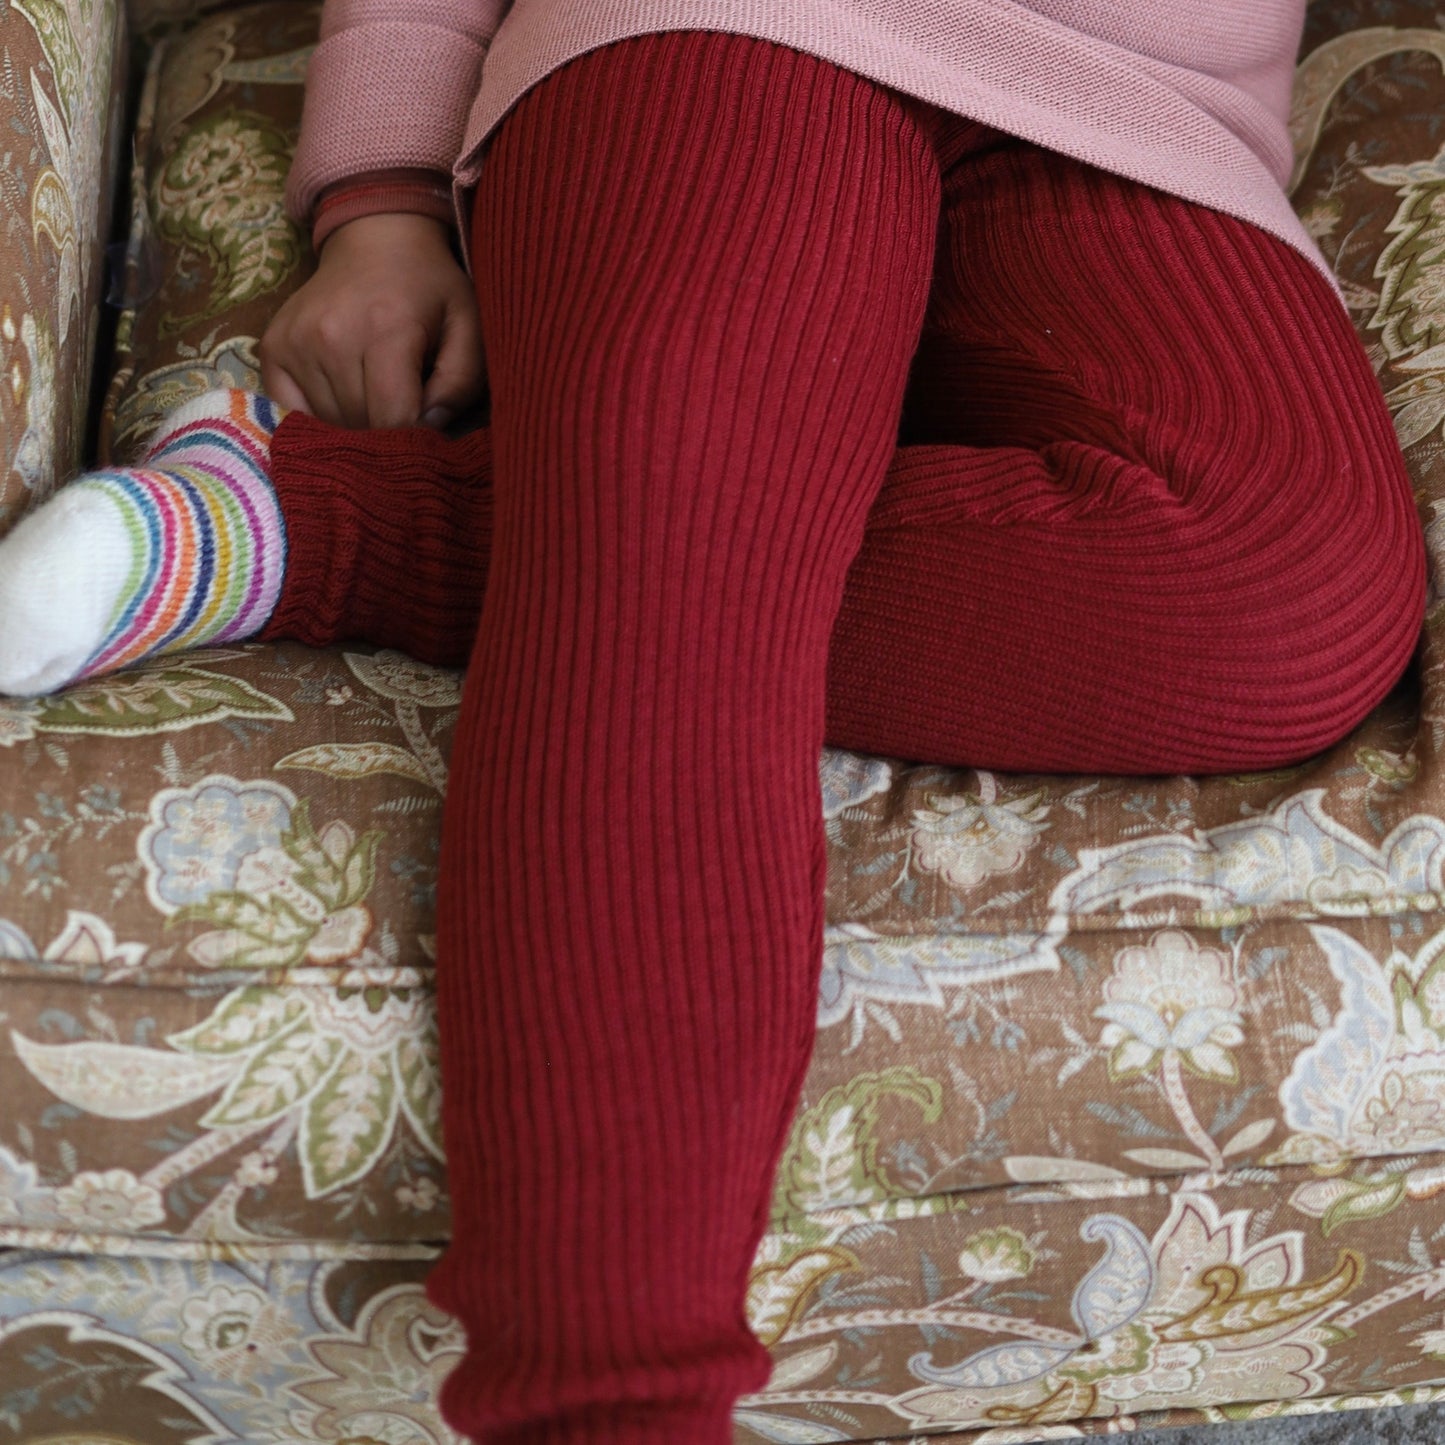 Legging enfant Disana, tricot de laine